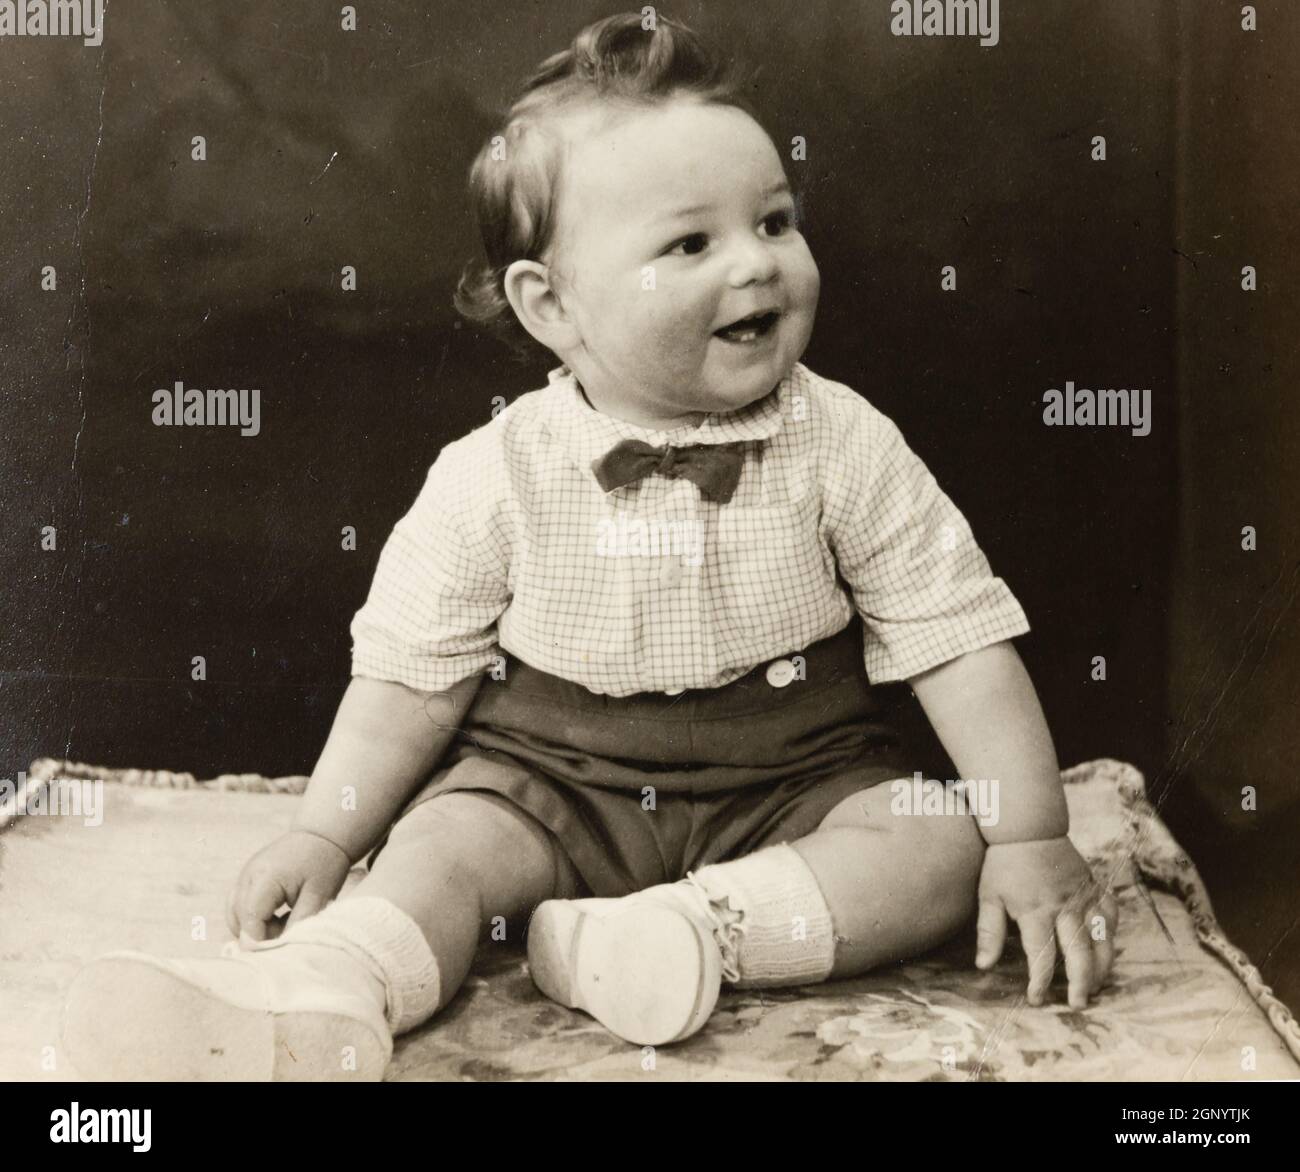 ritratto del bambino degli anni '50. Archivio. Vecchia seppia fotografia. Foto Stock